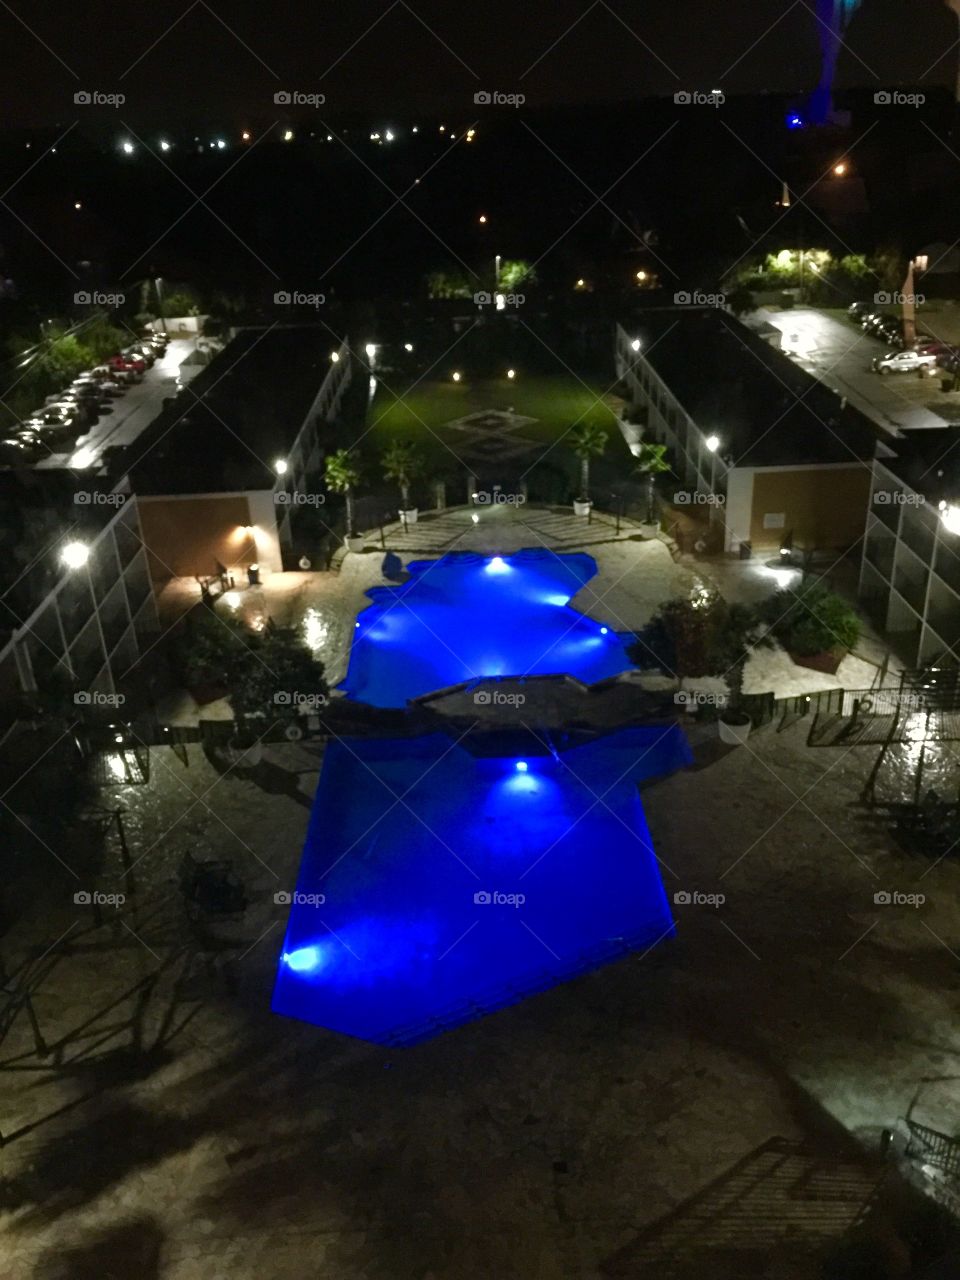 A pool by nightlights